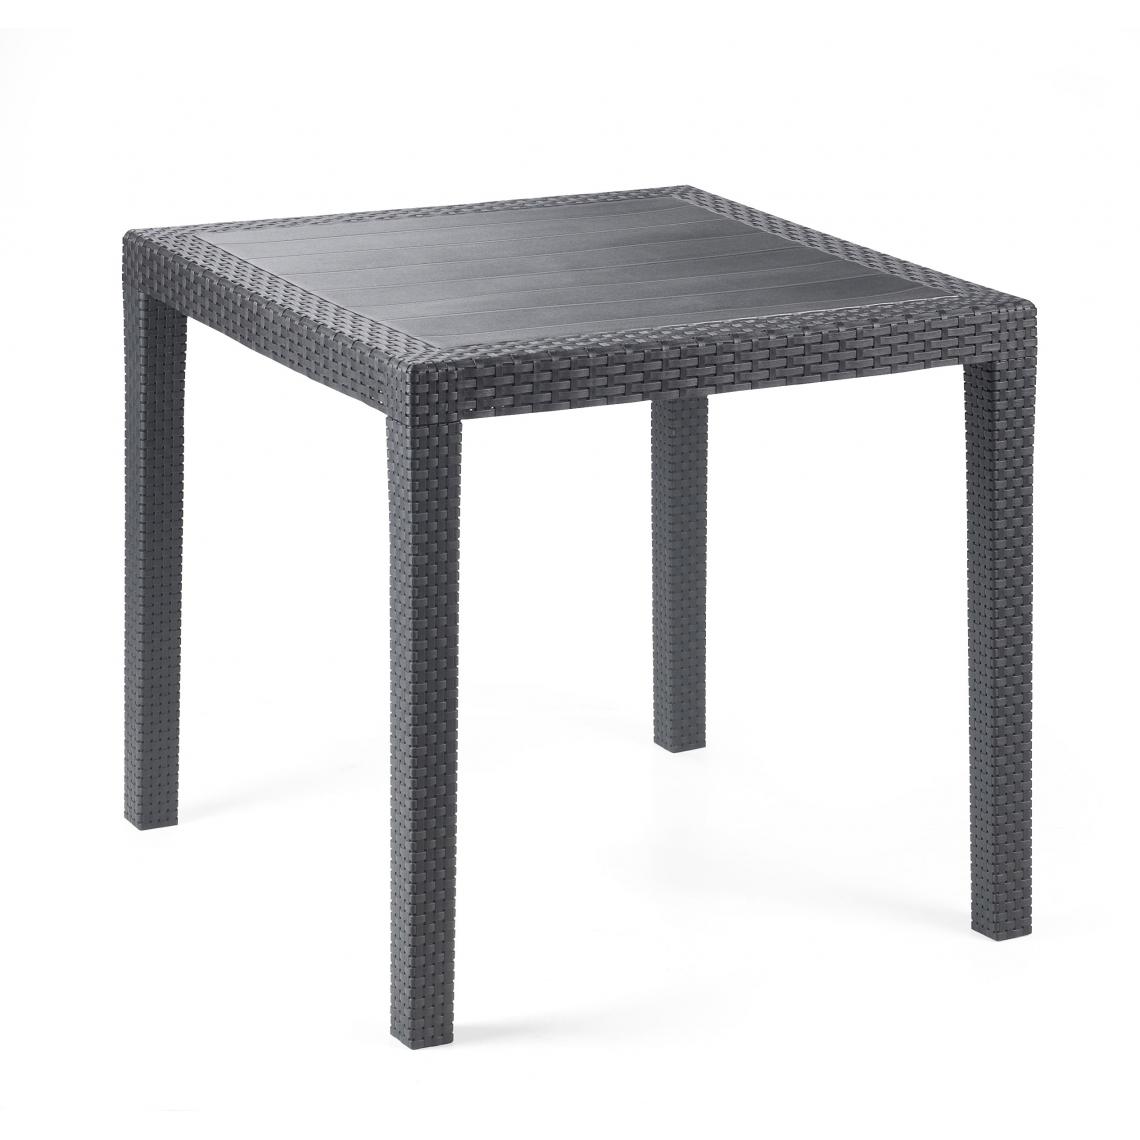 Alter - Table carrée effet rotin, couleur anthracite, Dimensions 79 x 72 x 79 cm - Tables à manger